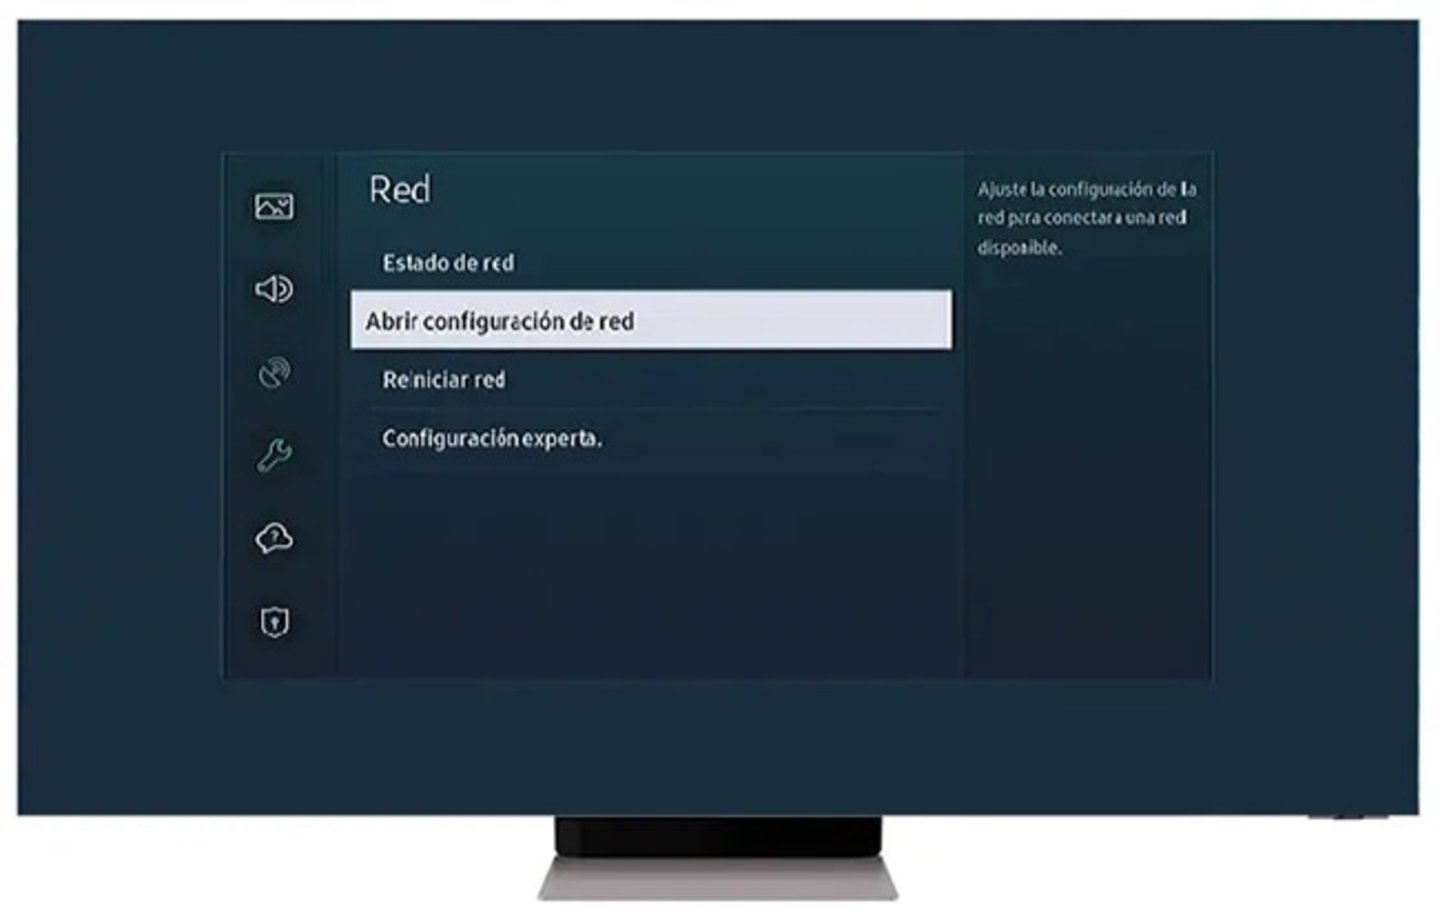 Menú de configuración de red en un televisor Samsung